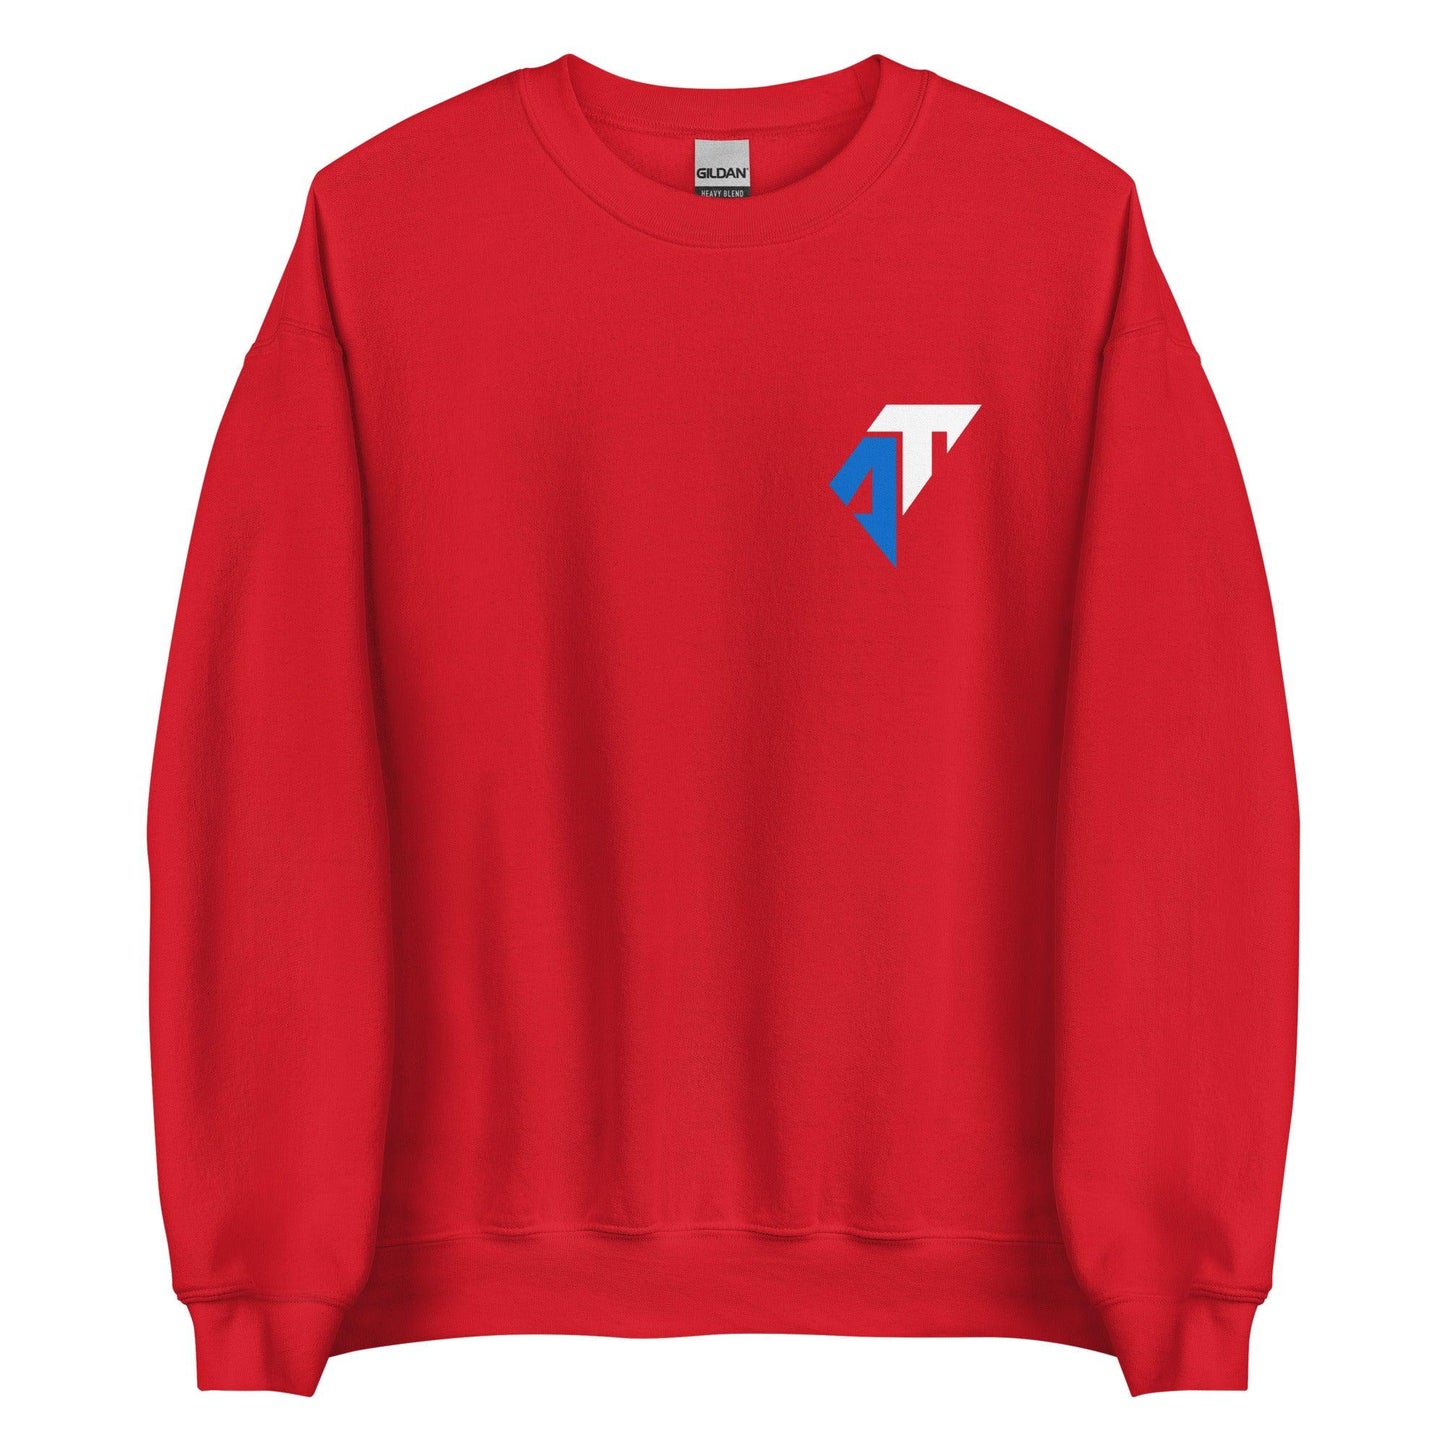 AJ Toney "Essential" Sweatshirt - Fan Arch